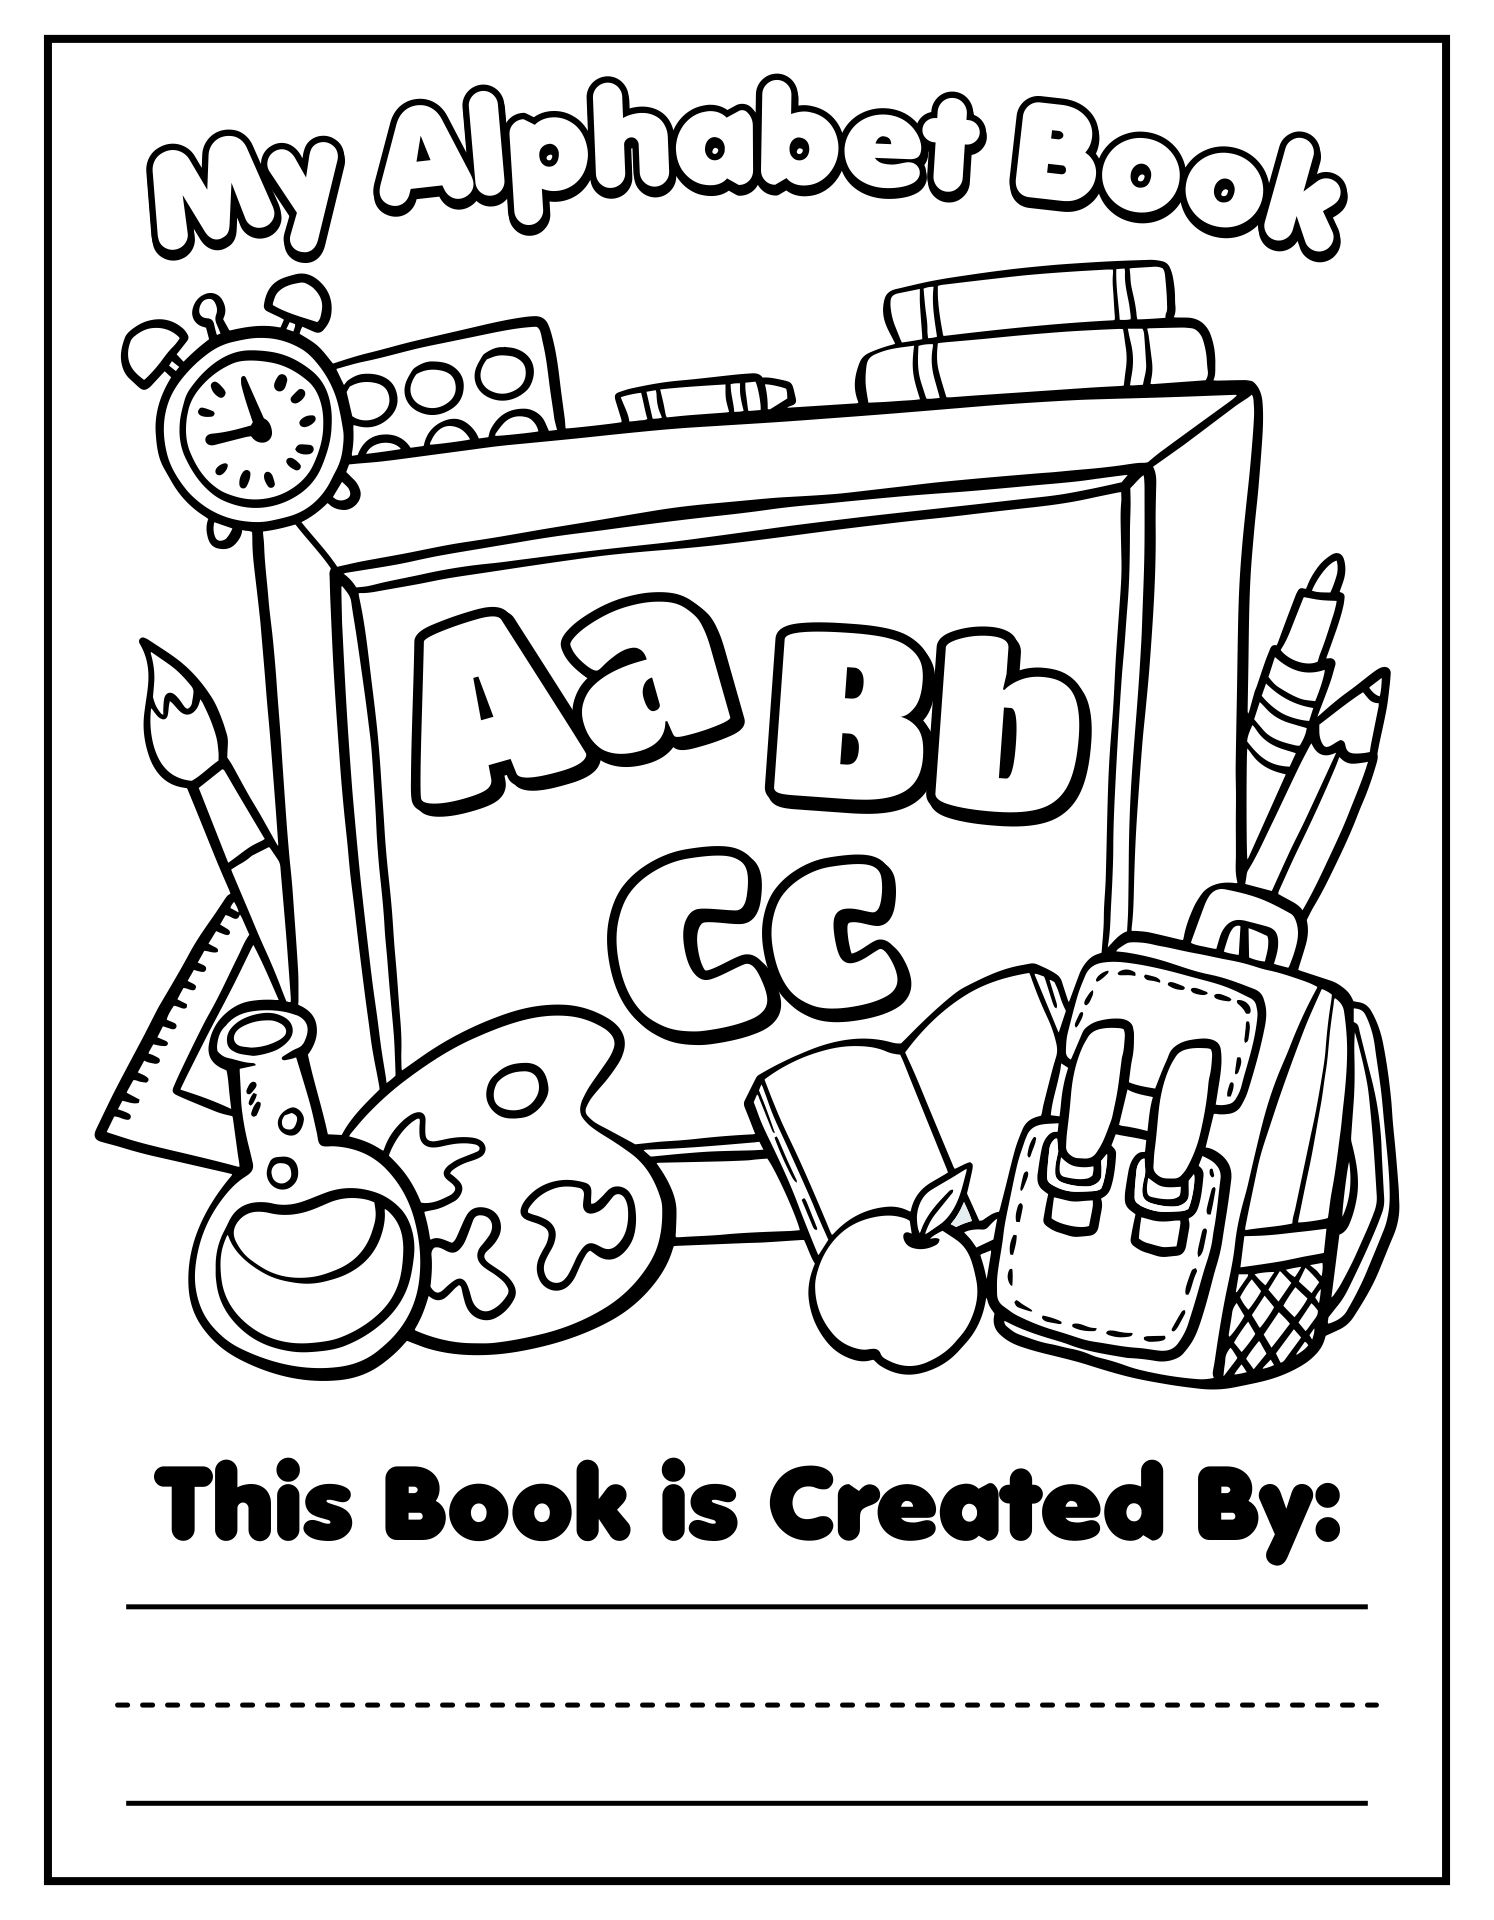 Free Printable Alphabet Book Cover